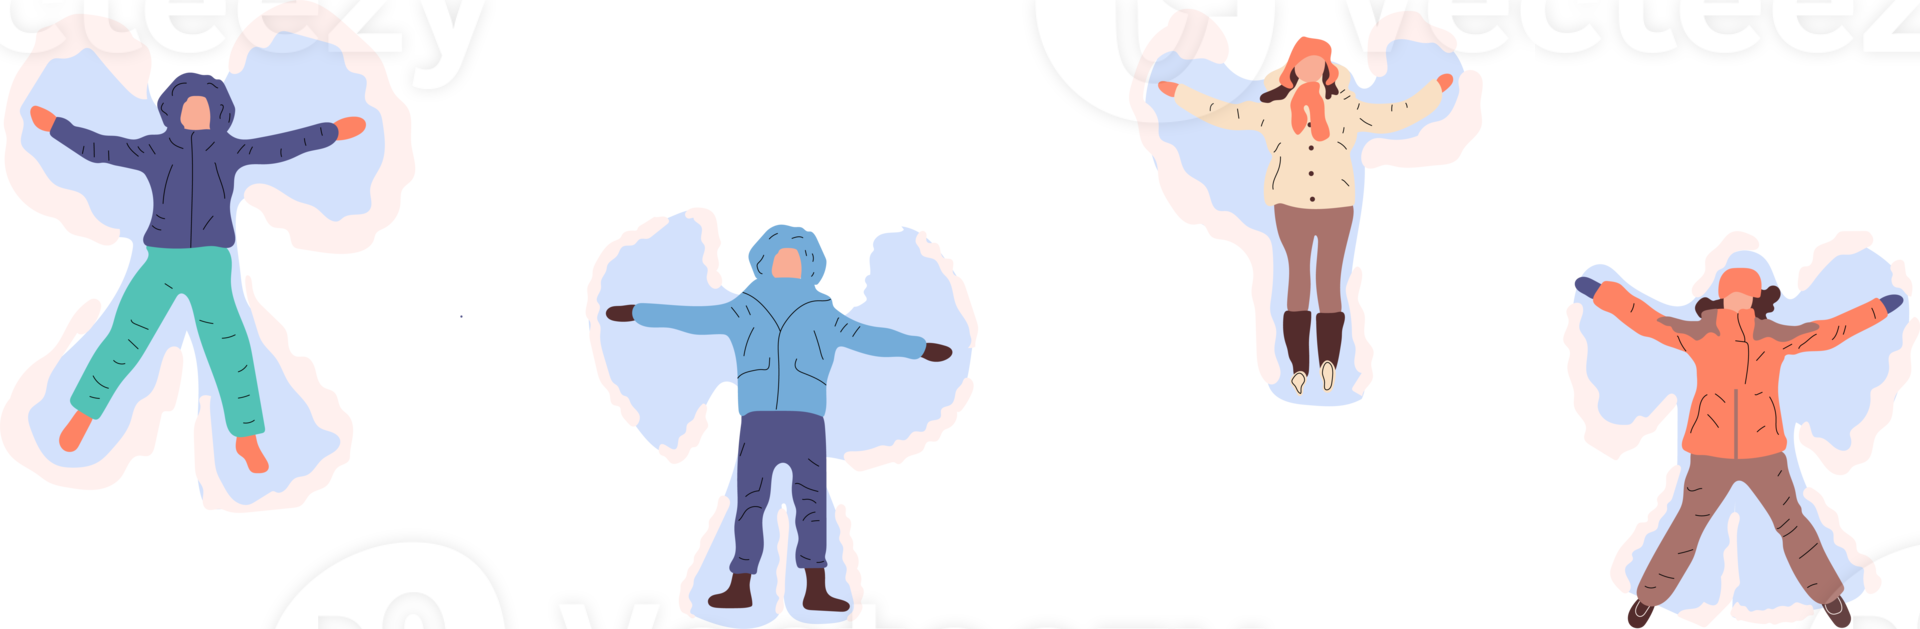 pessoas felizes fazendo anjo de neve. png em estilo cartoon. todos os elementos são isolados